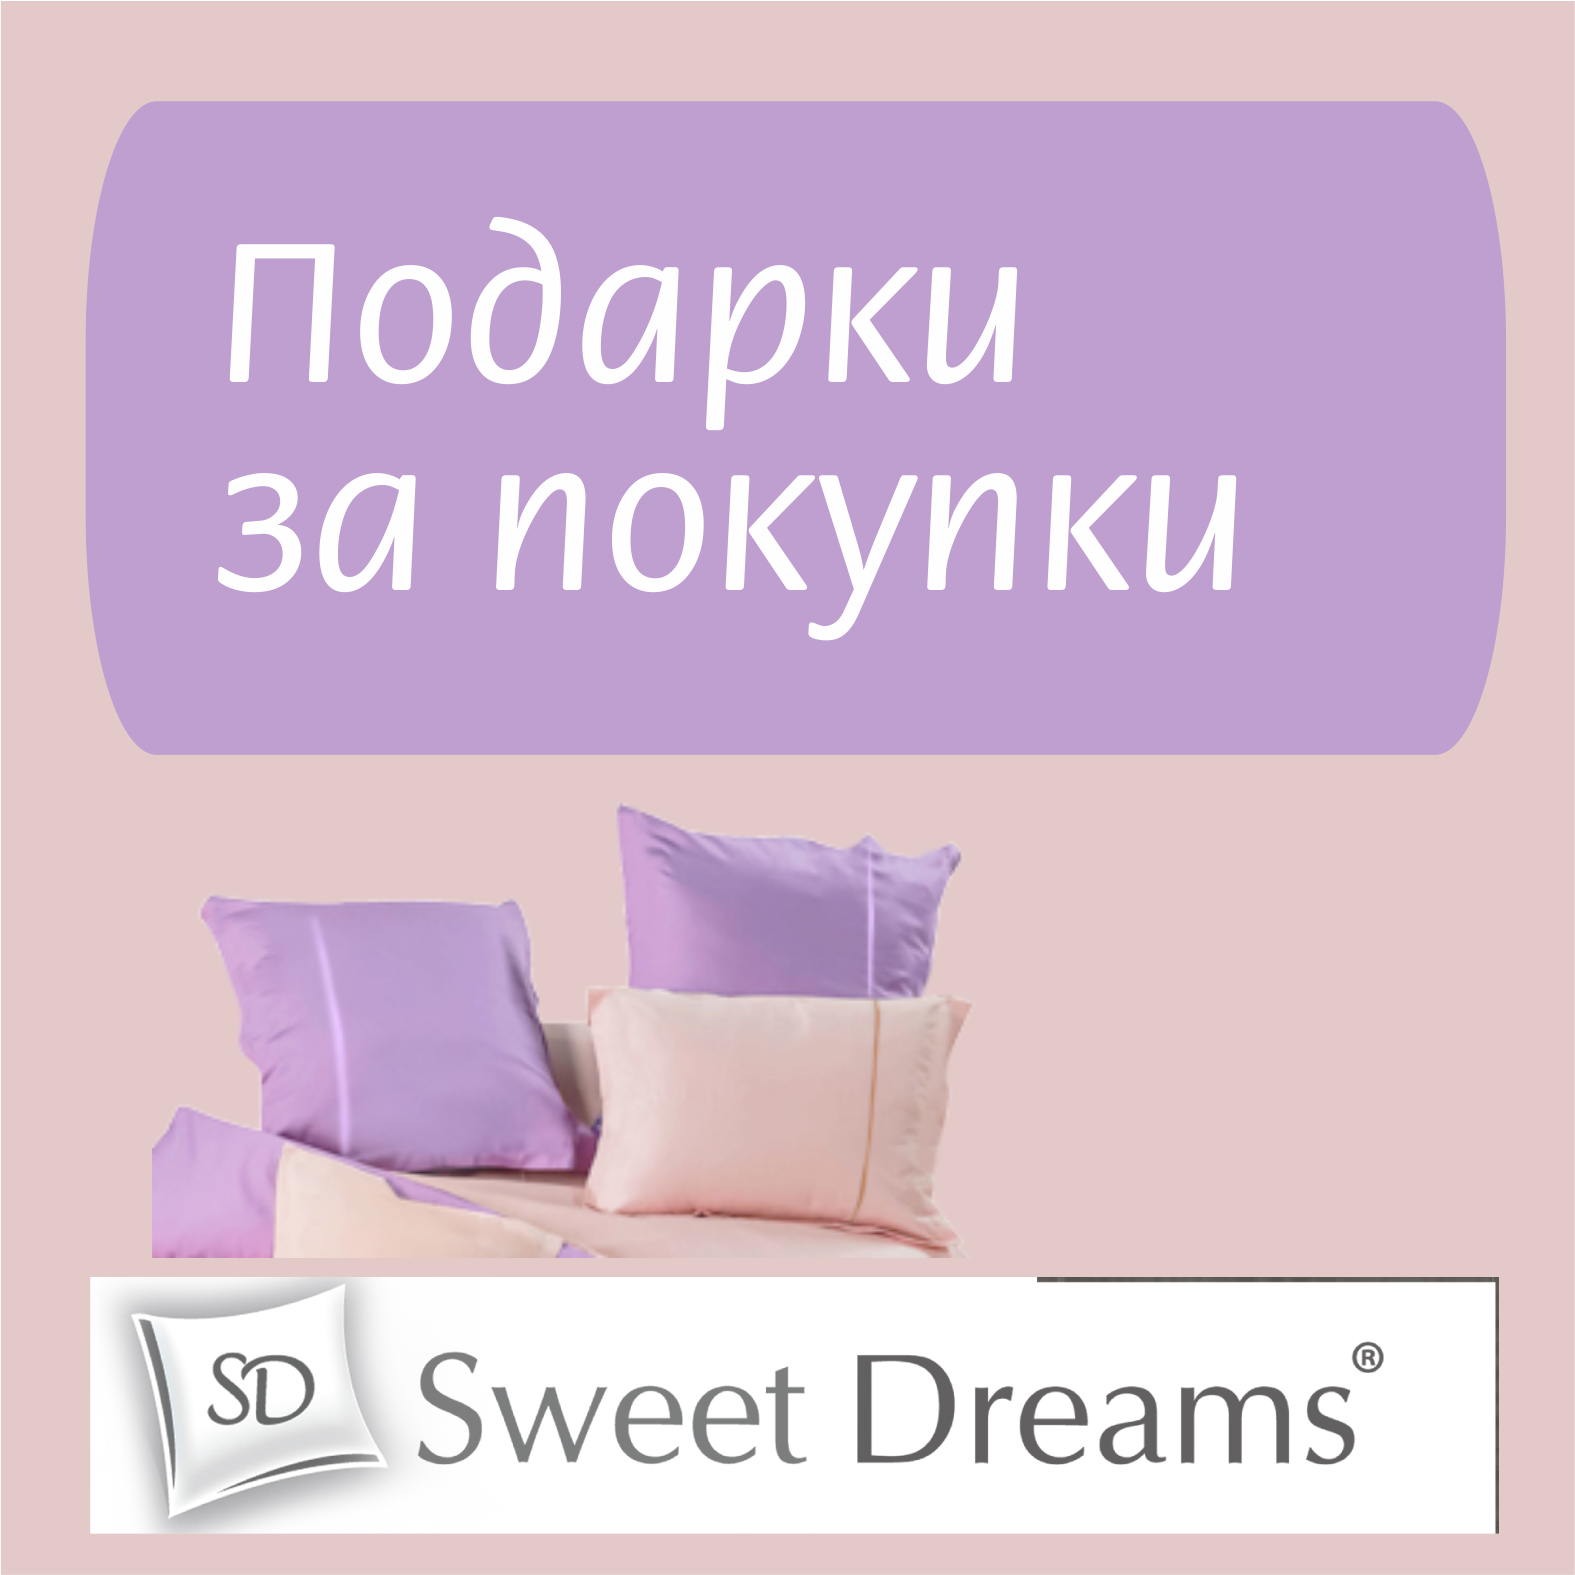 Включи sweet dream. Оксимирон Свит дримс. Sweet Dreams кафе. Магазин Свит дримс. Sweet Dreams Klaas.